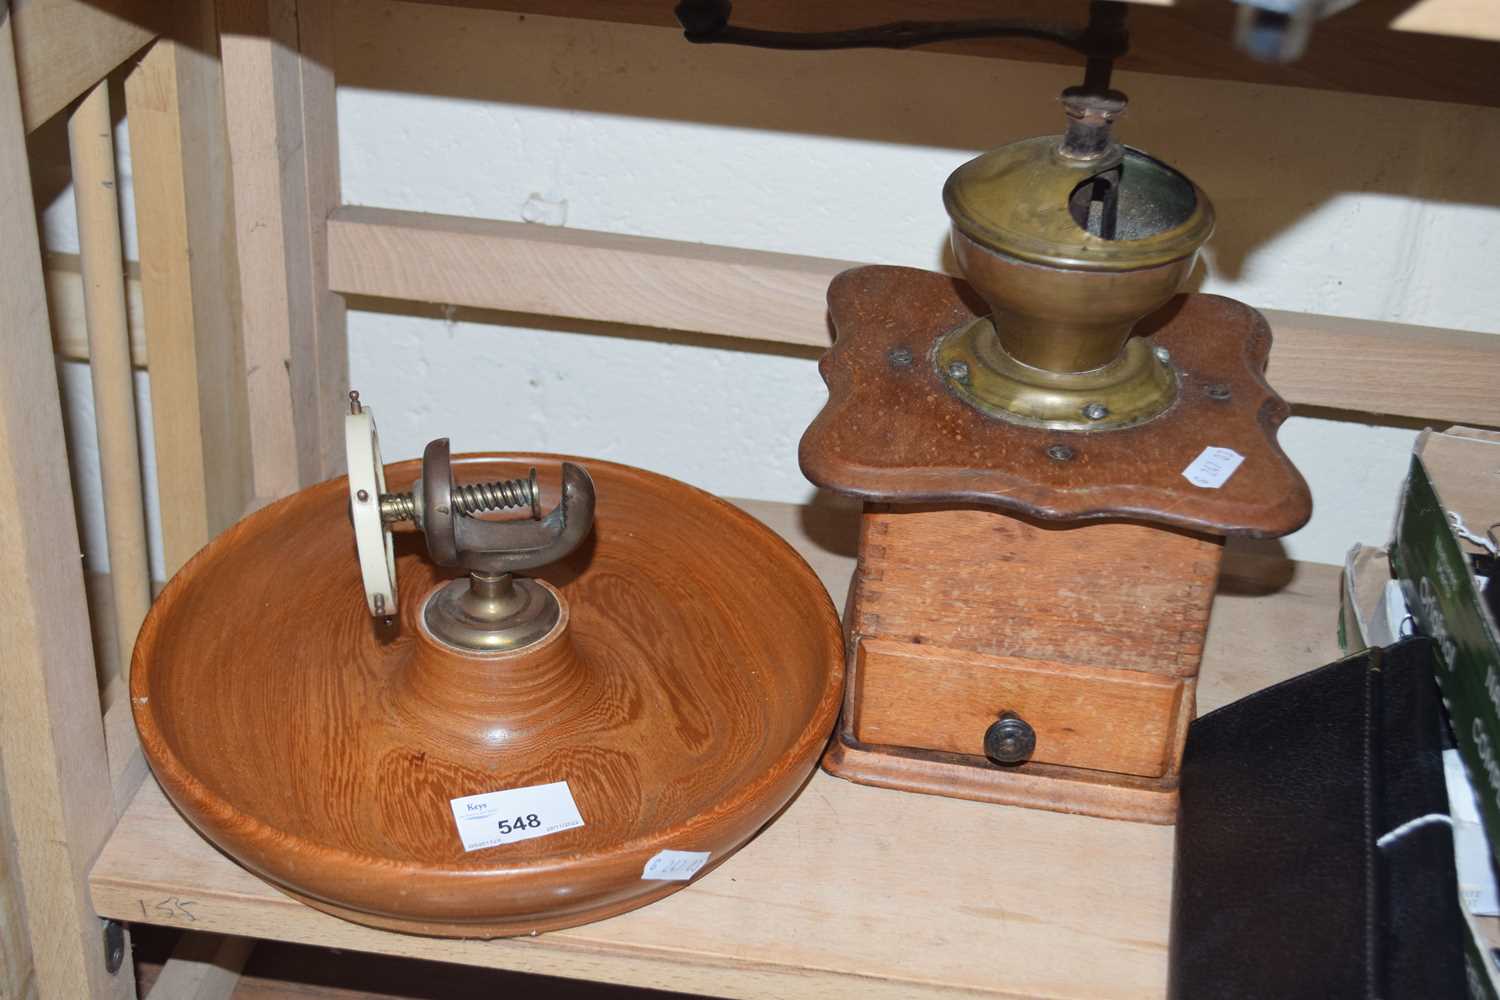 Vintage coffee grinder and a vintage nut cracker on turned wooden base